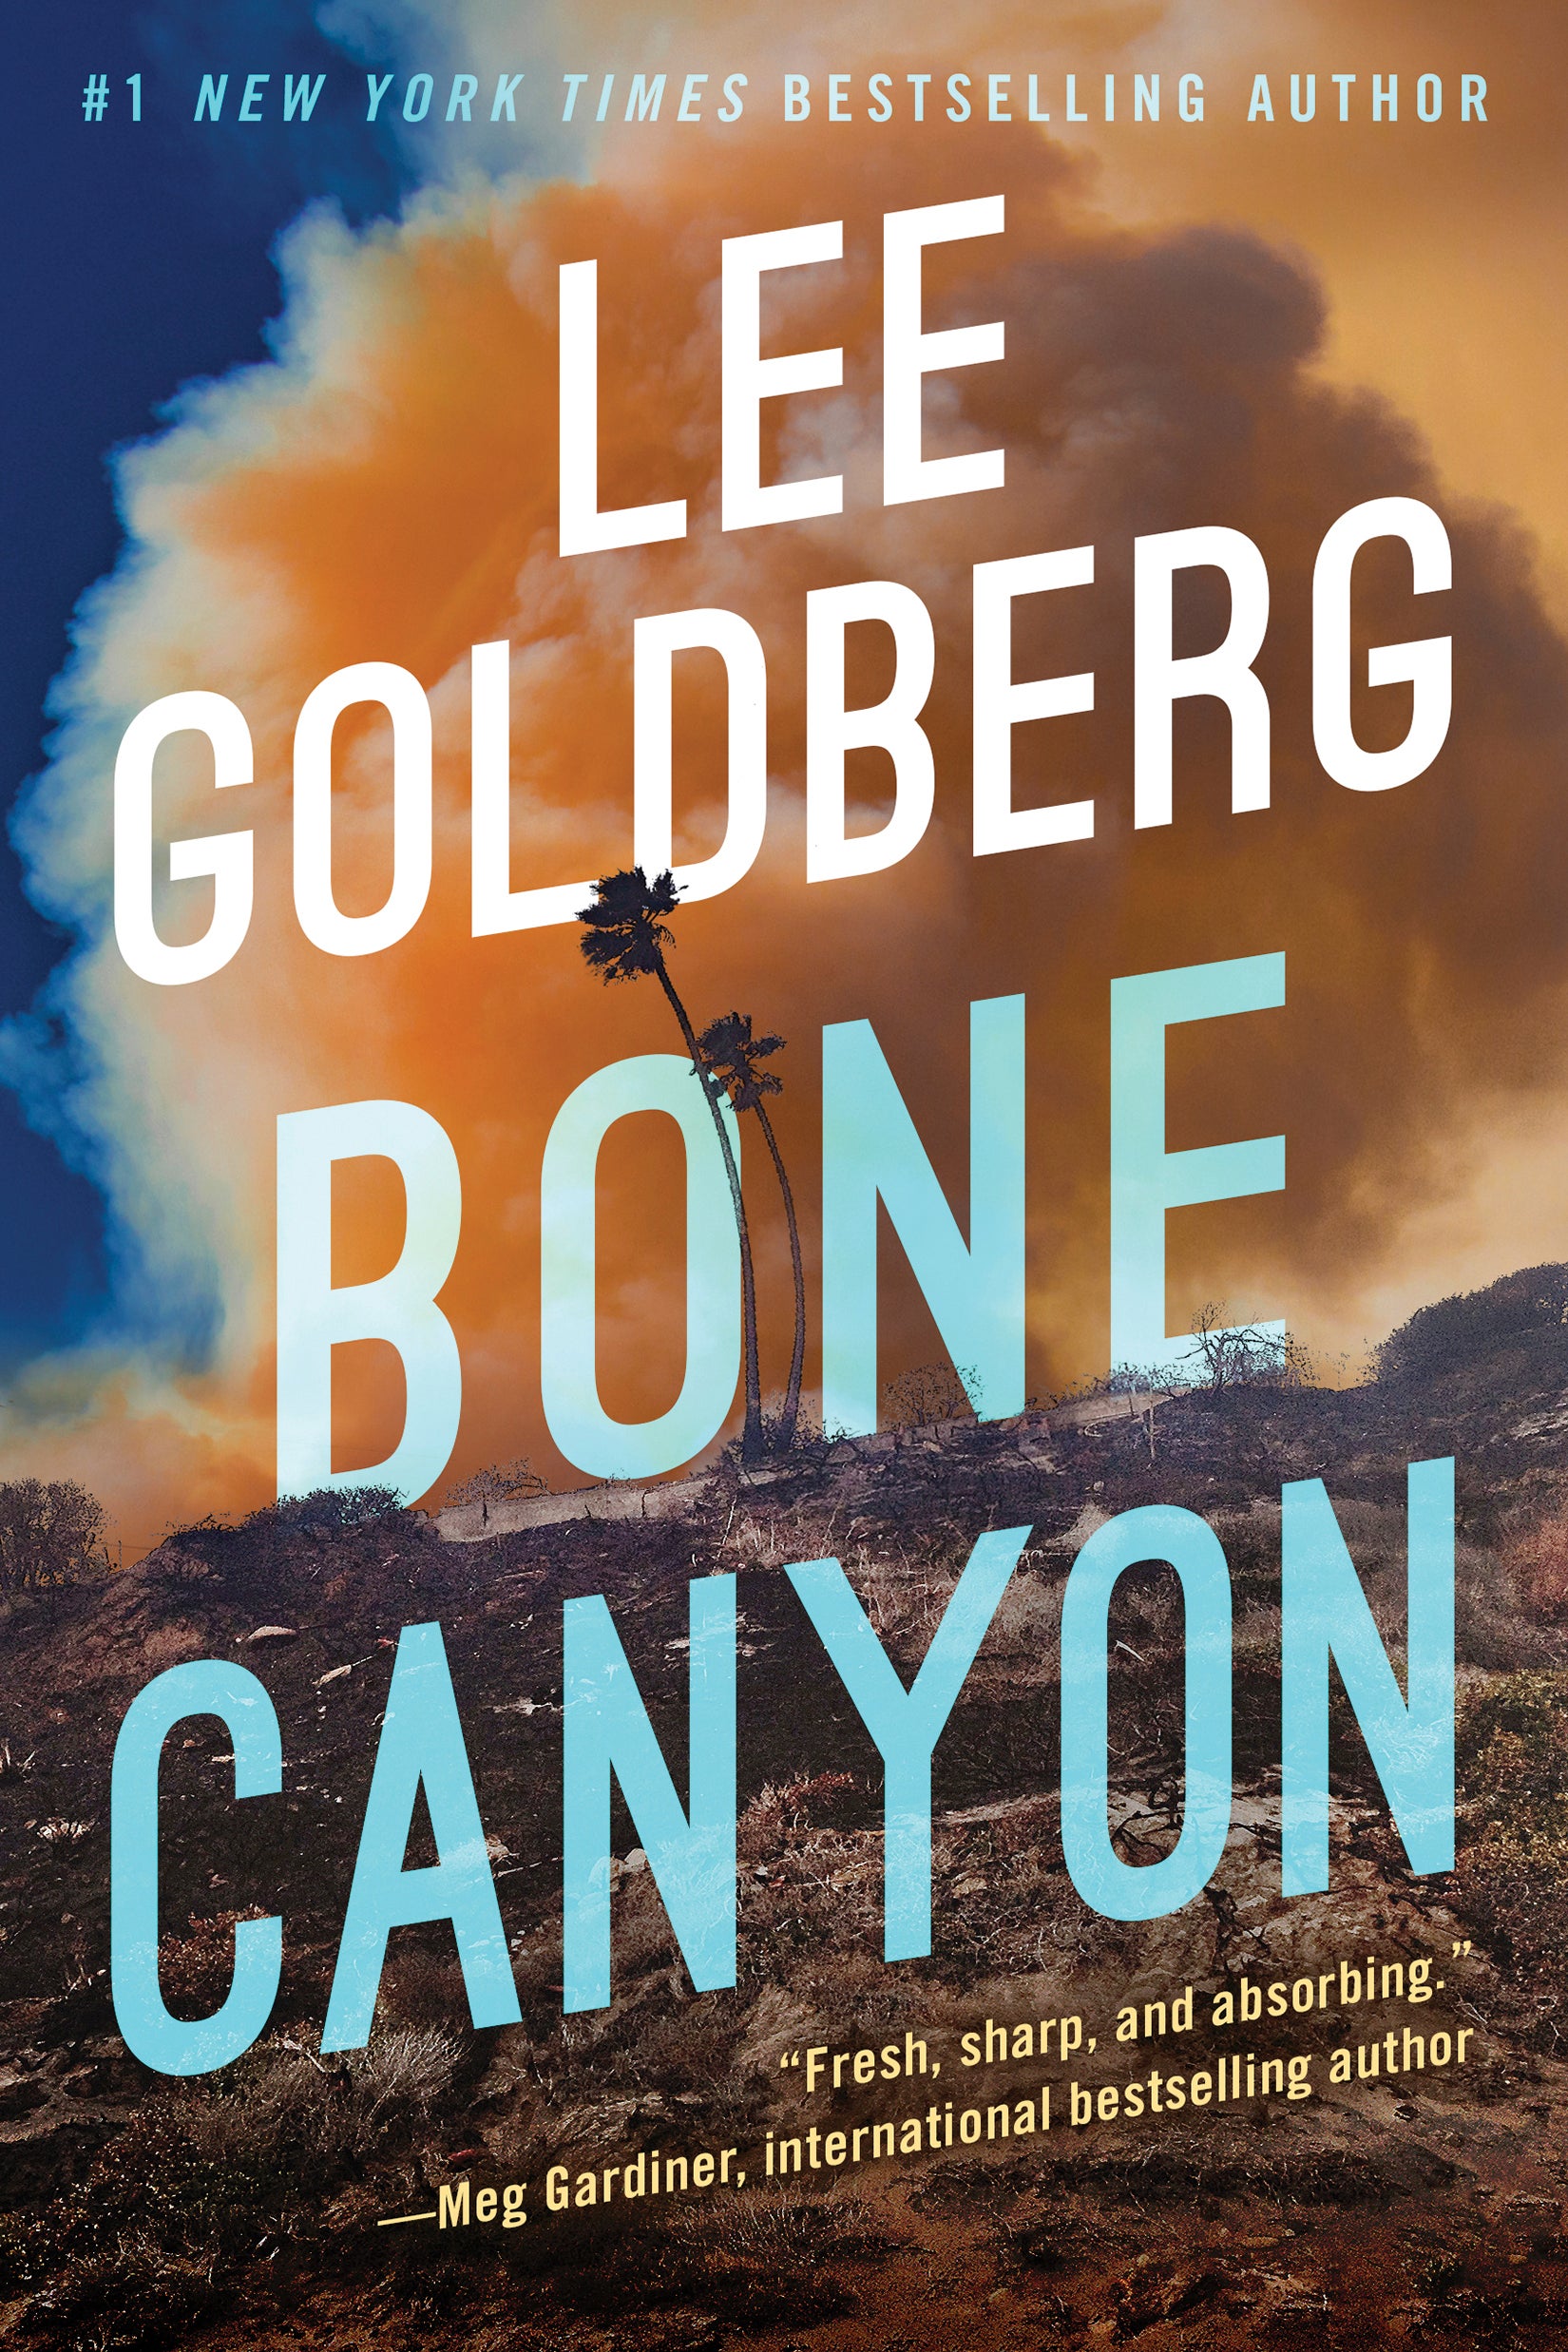 Book Review - Bone Canyon